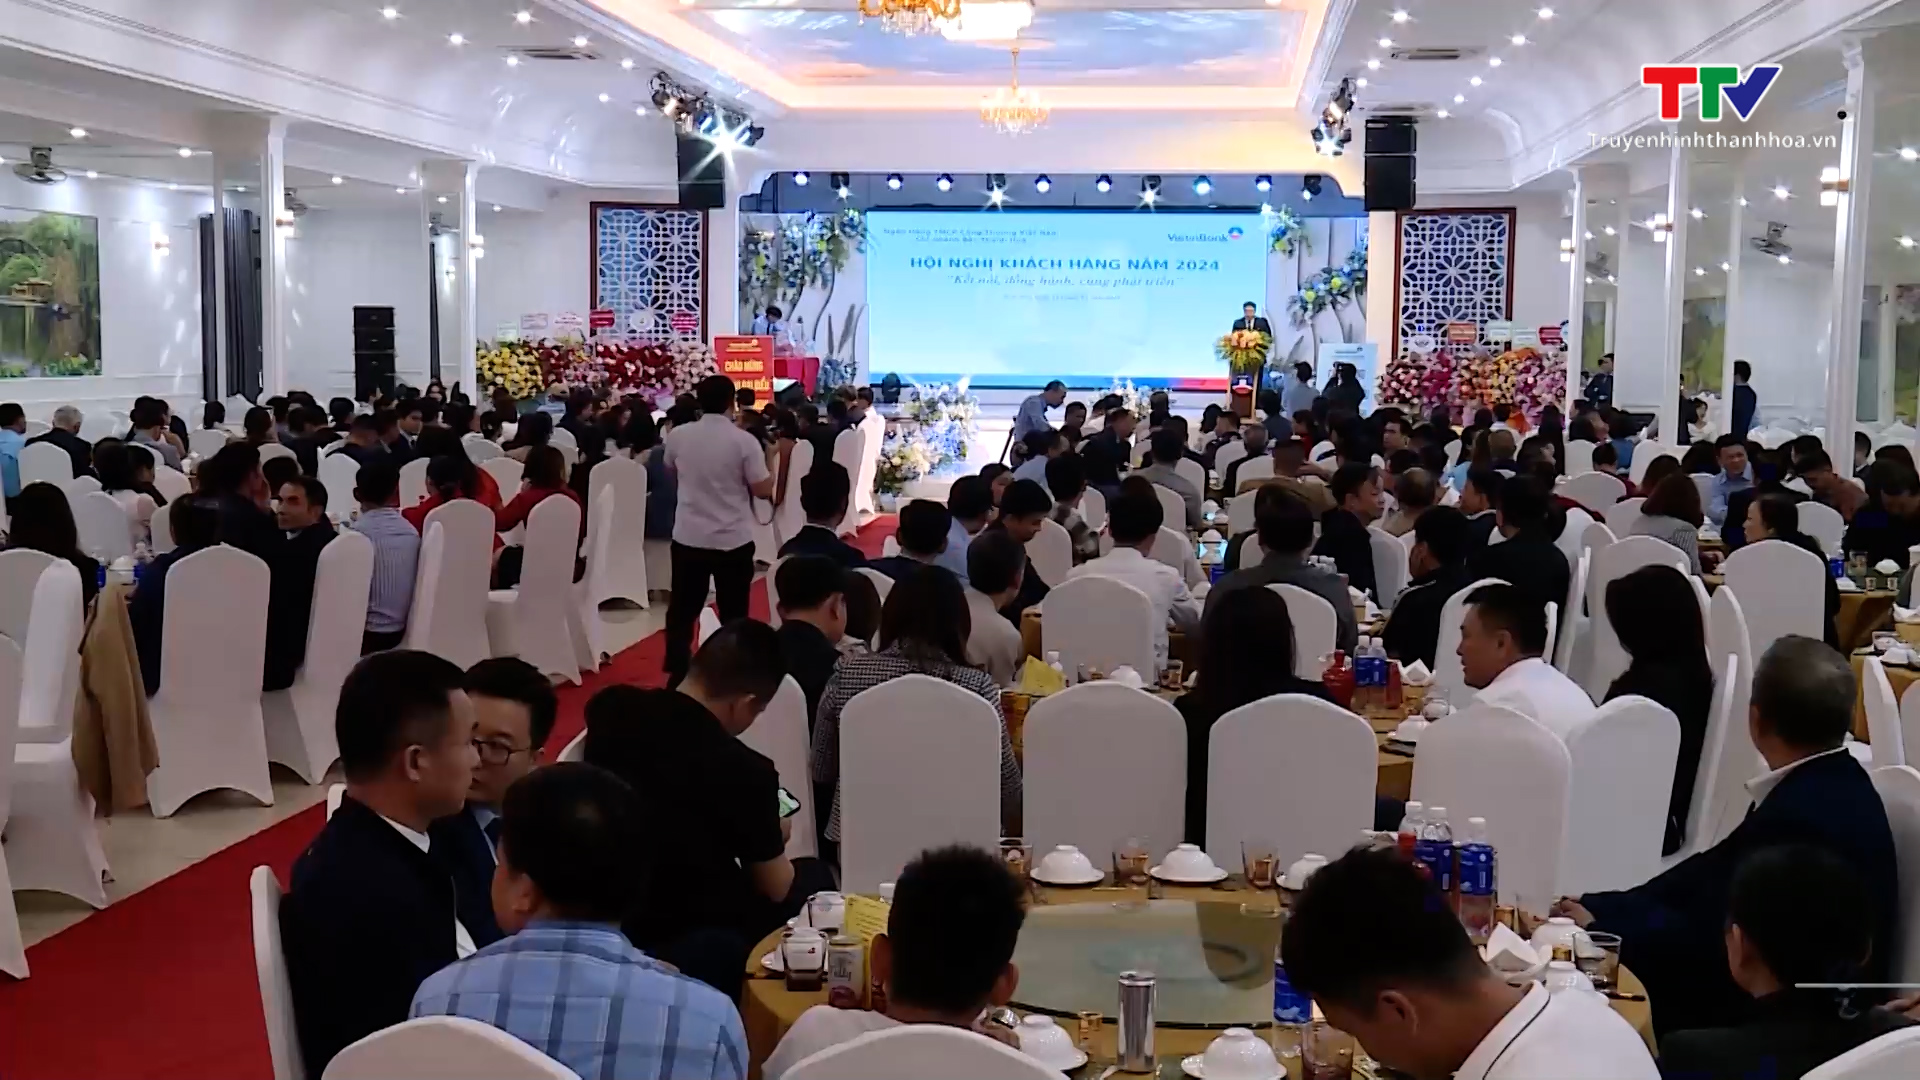 Ngân hàng TMCP Công thương Chi nhánh Bắc Thanh Hóa tổ chức Hội nghị  khách hàng năm 2024- Ảnh 1.